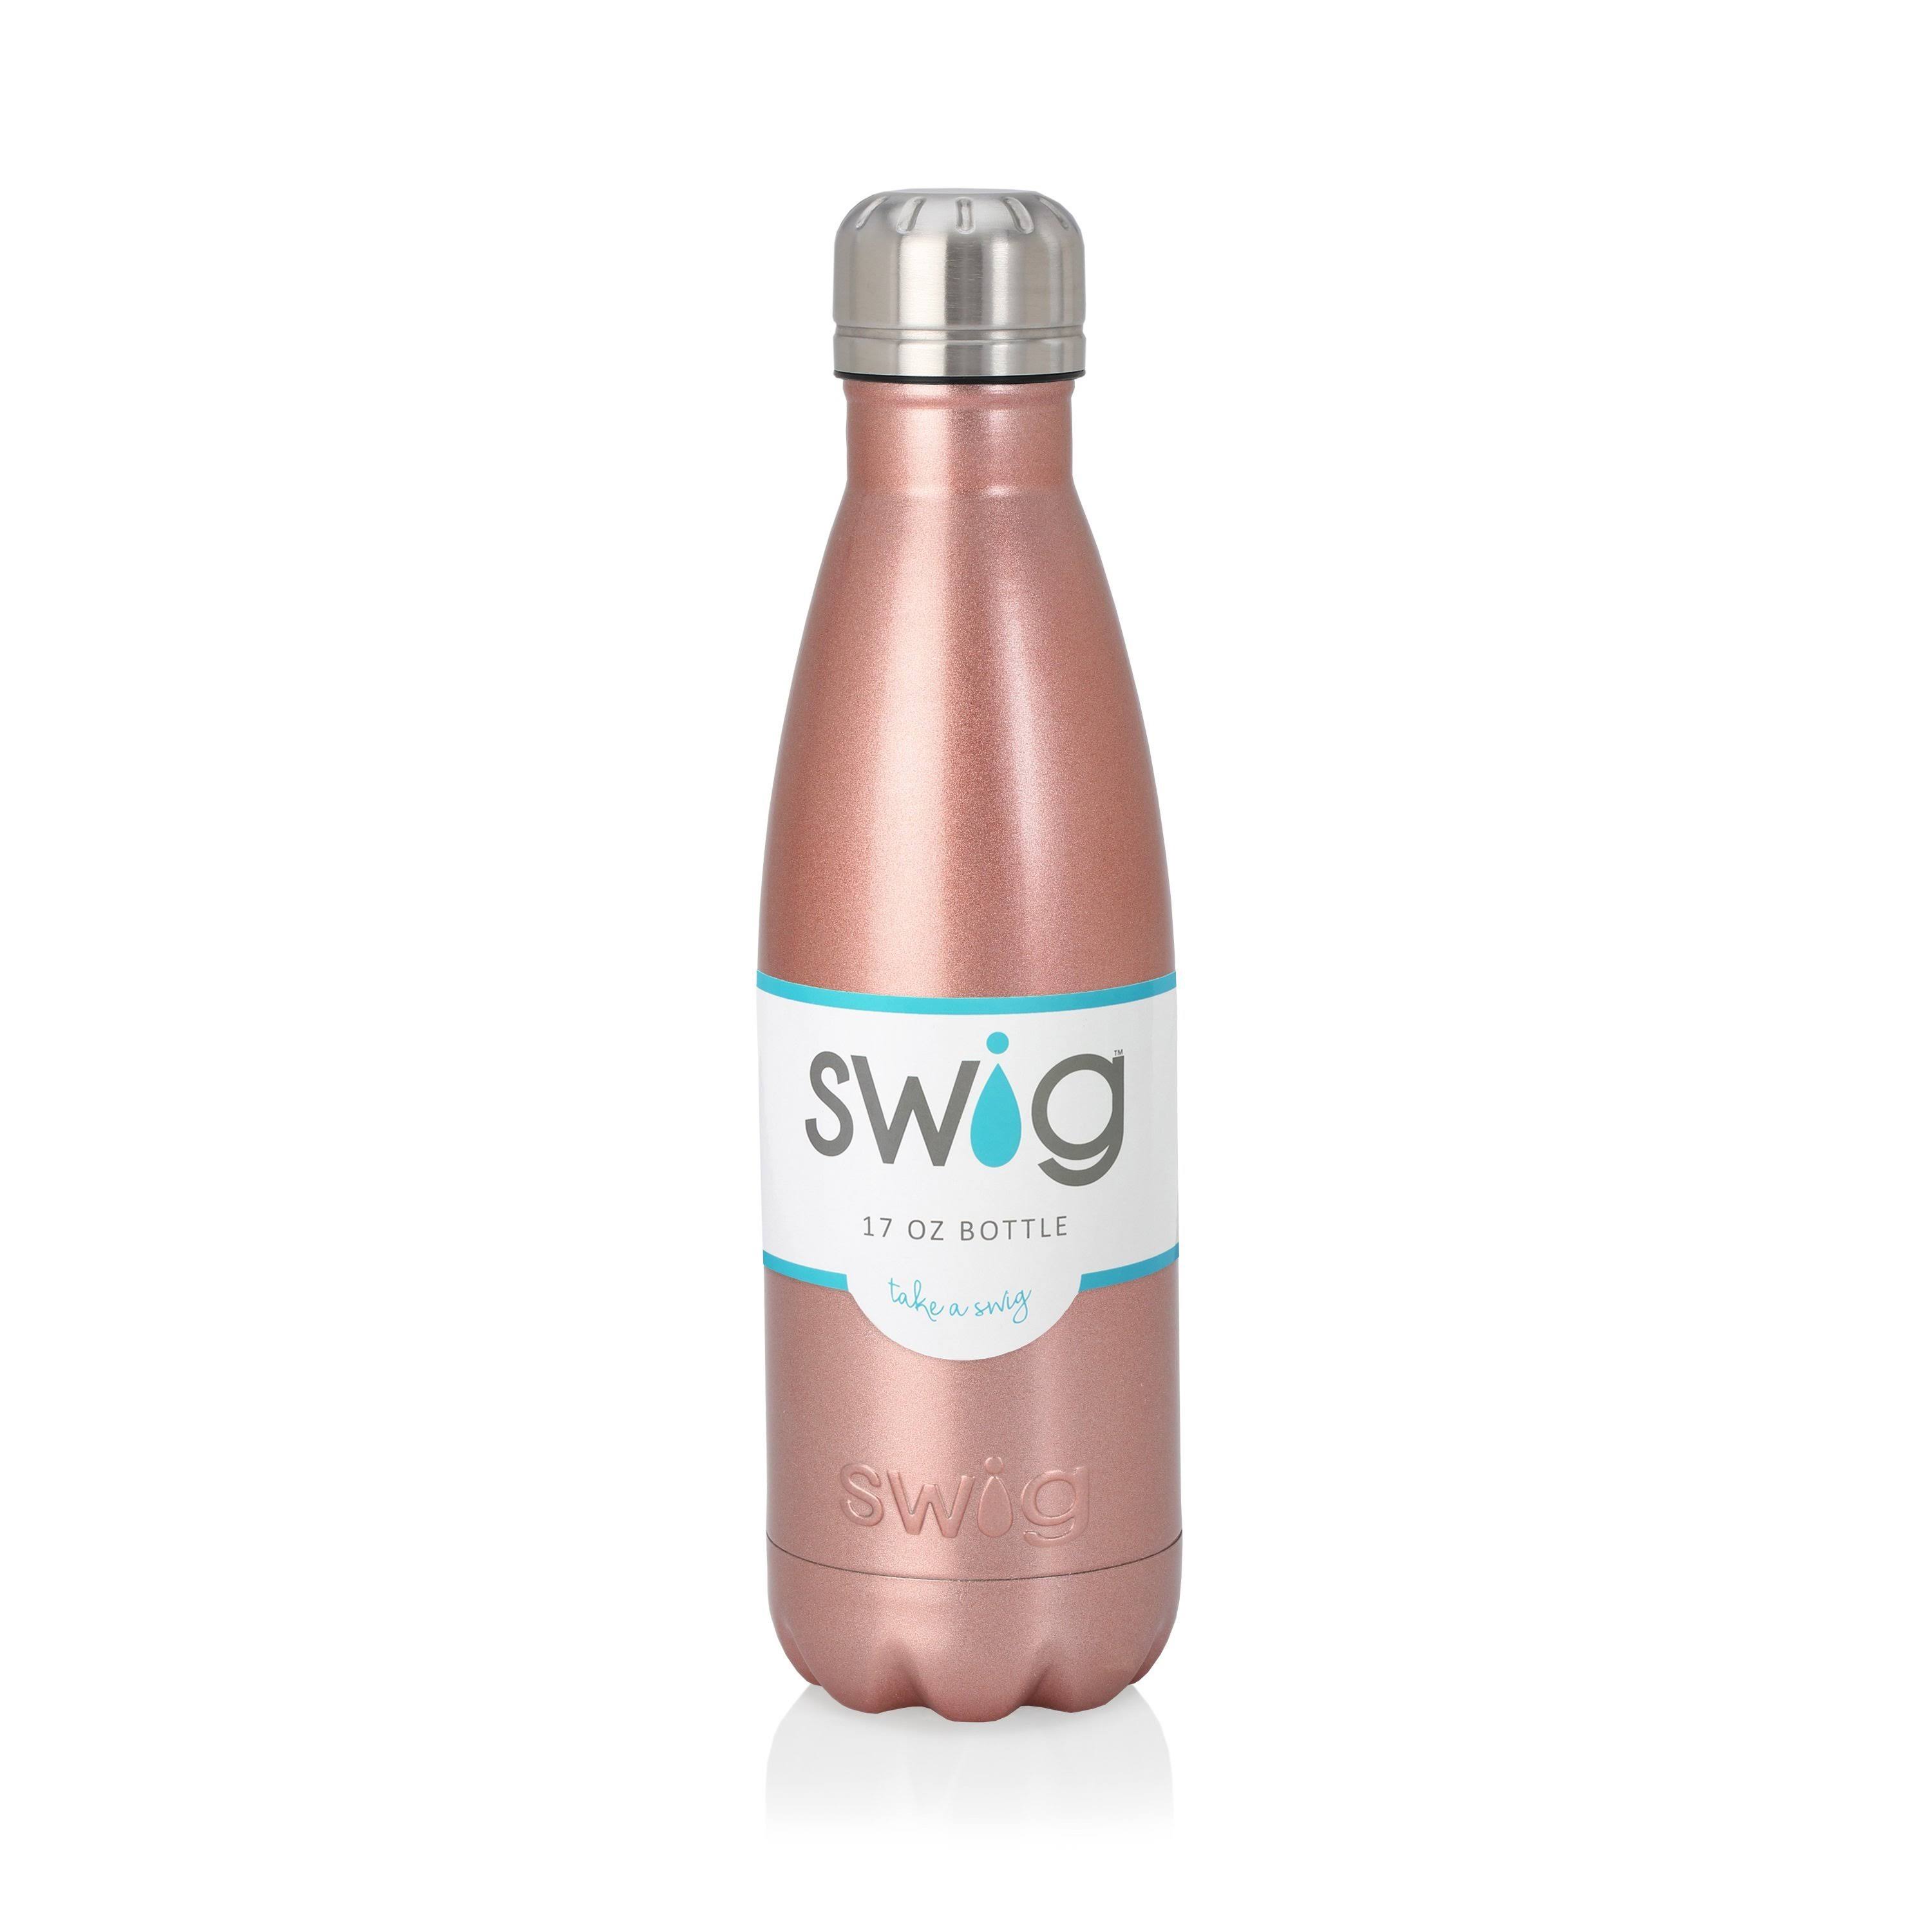 Swig 17 oz Bottle - Rose Gold